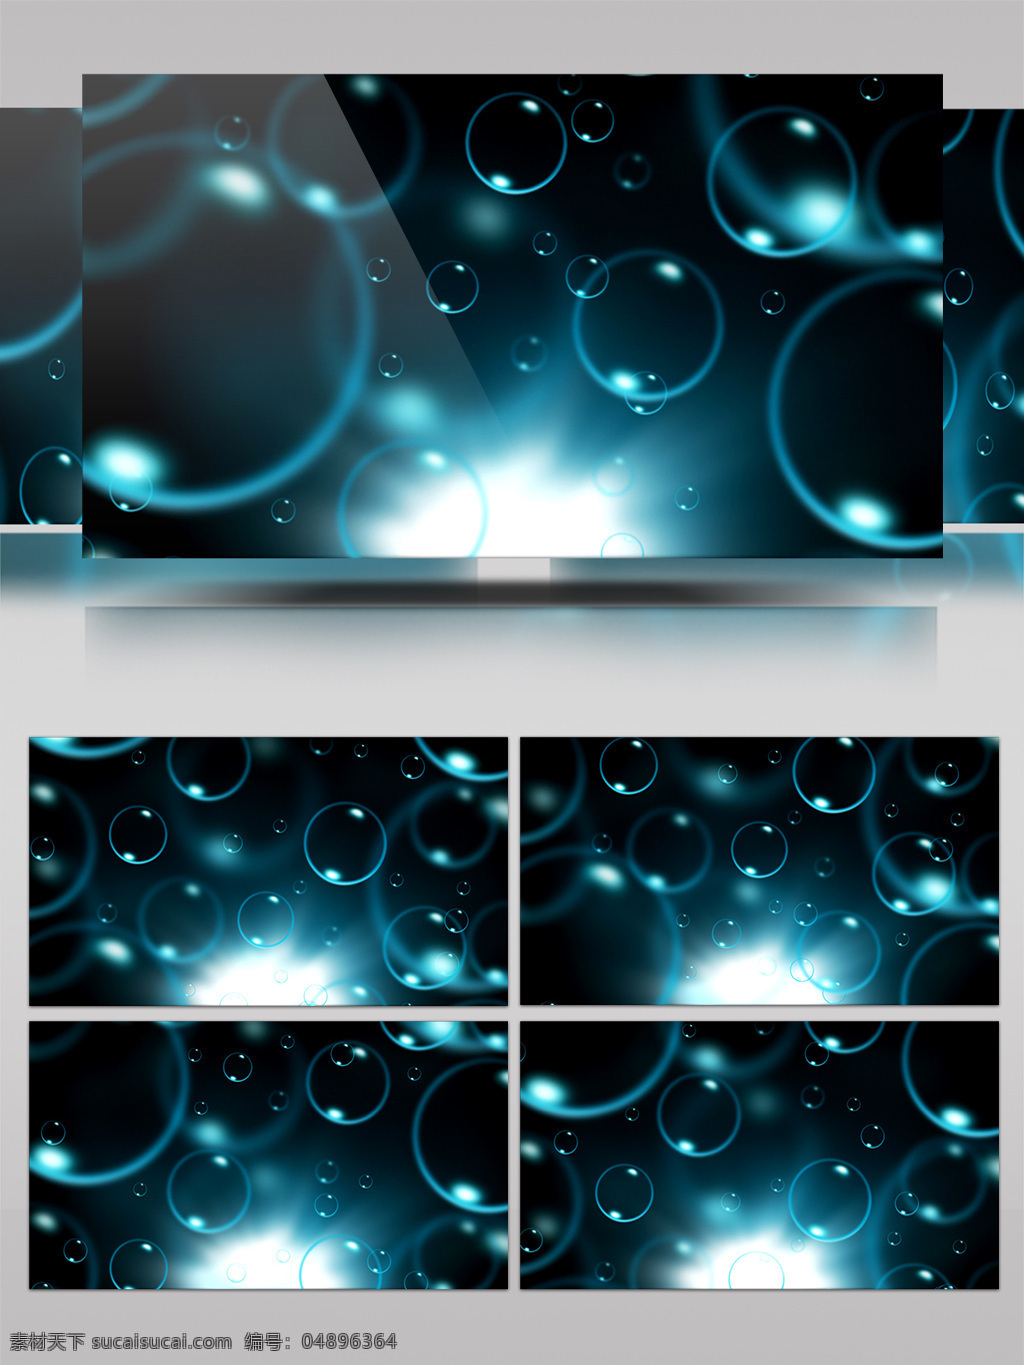 海洋 金 粒子 动态 led 大屏 视频 背景 动态素材 婚庆粒子 蓝色背景 蓝色粒子 粒子背景 星光粒子